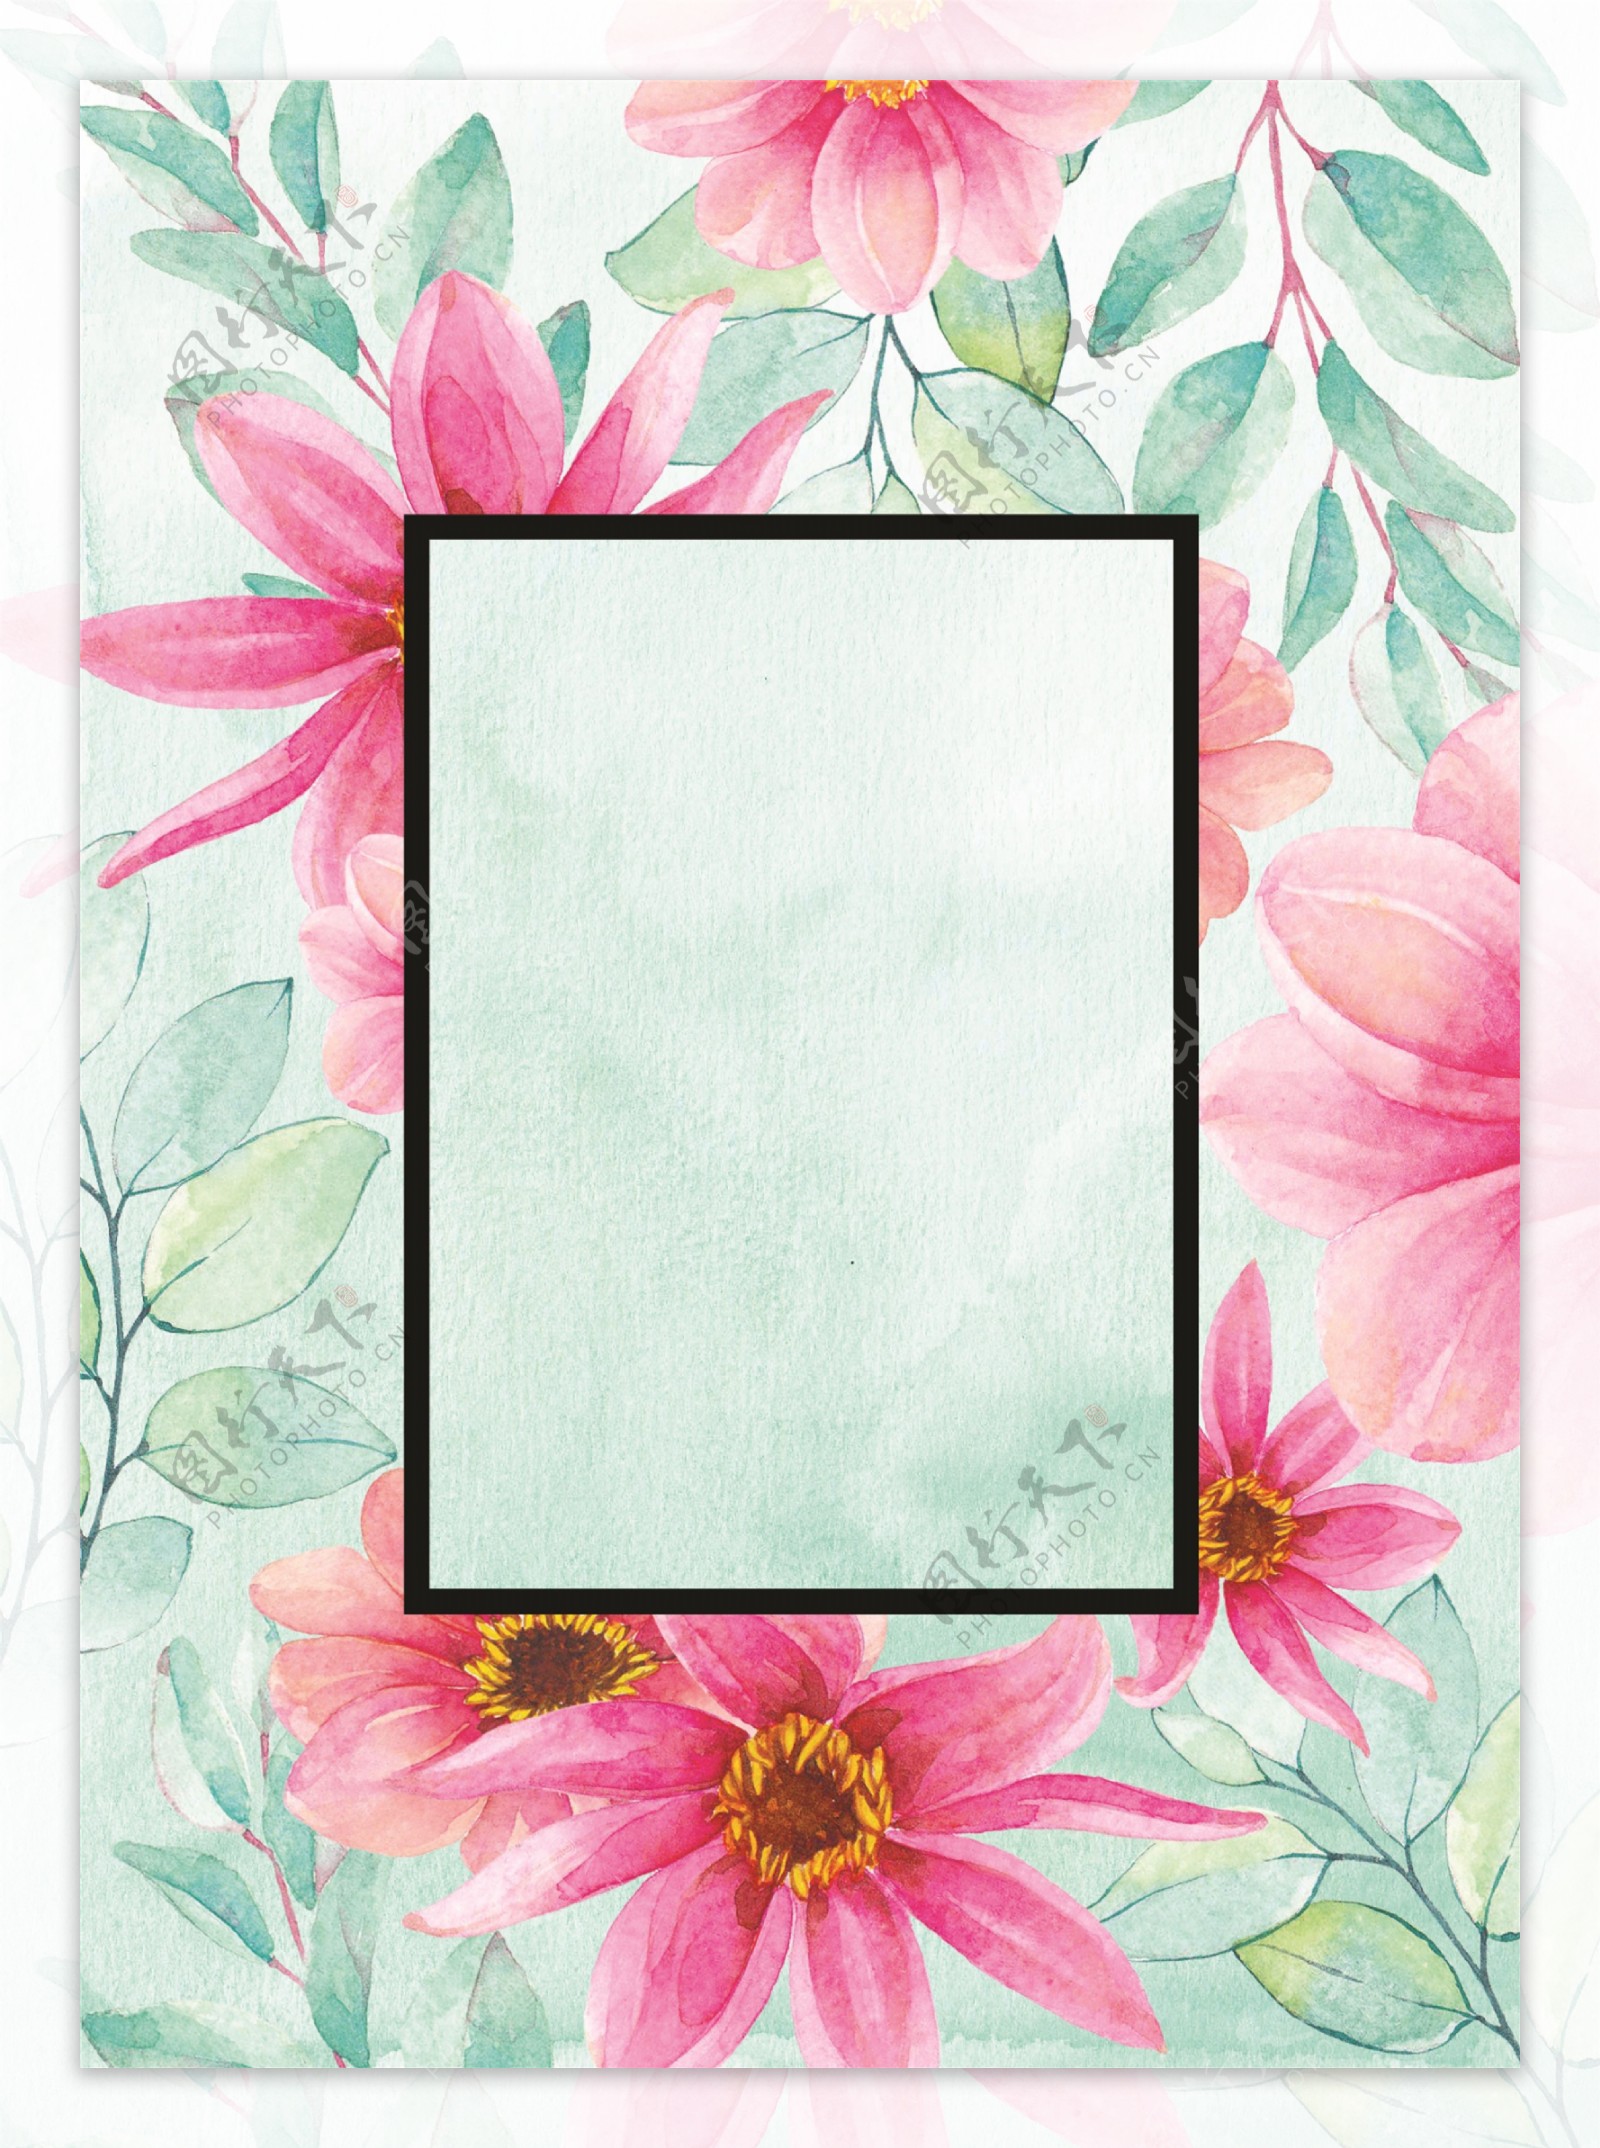 花卉背景边框图片素材